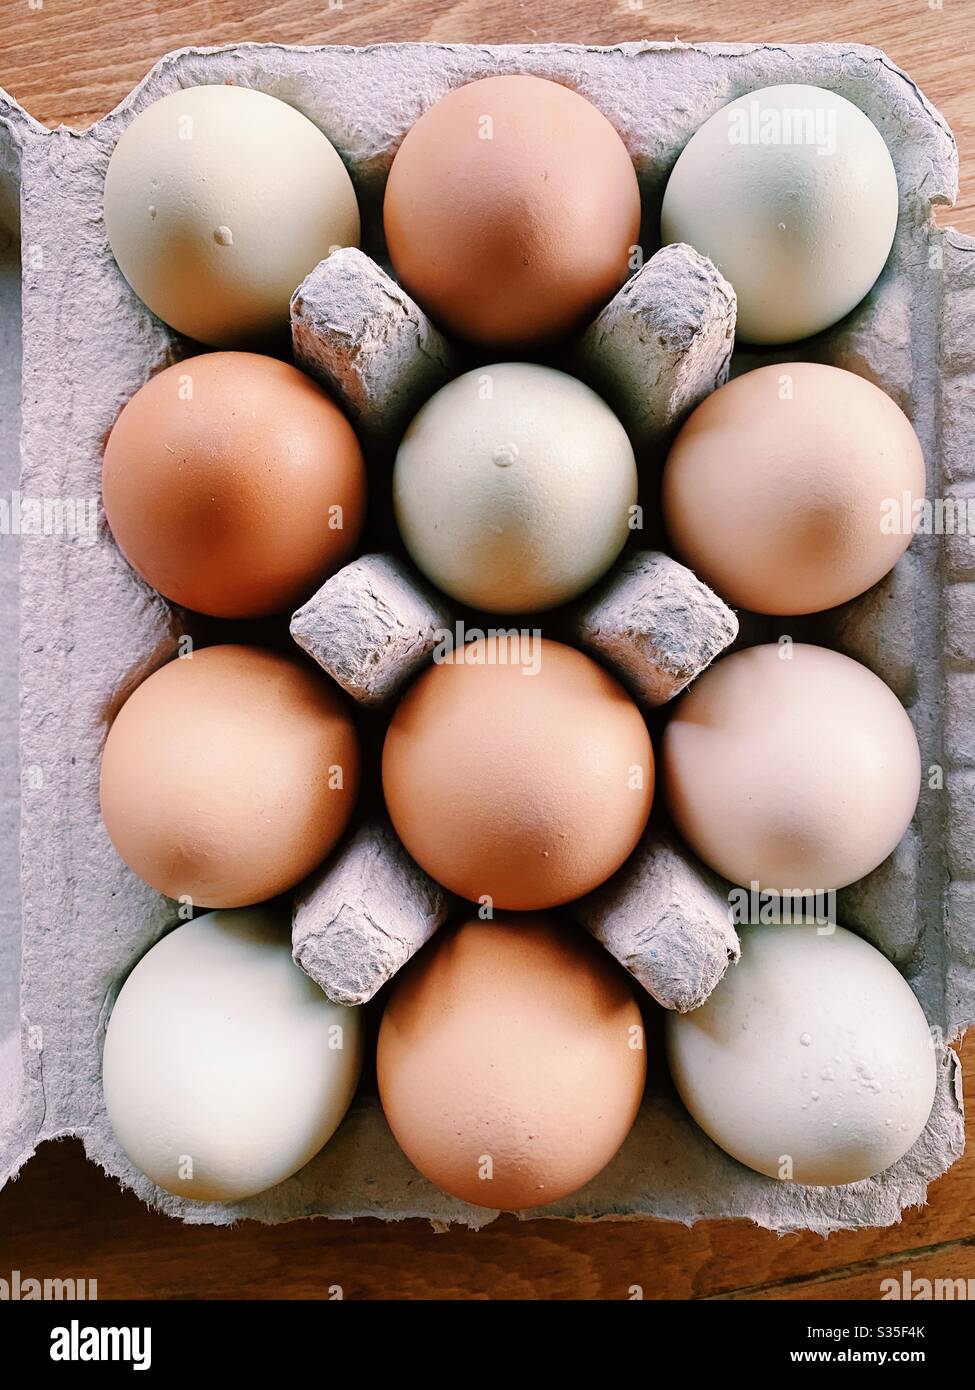 Overhead view of a dozen eggs - organic, pasture raised, non-gmo. Stock Photo